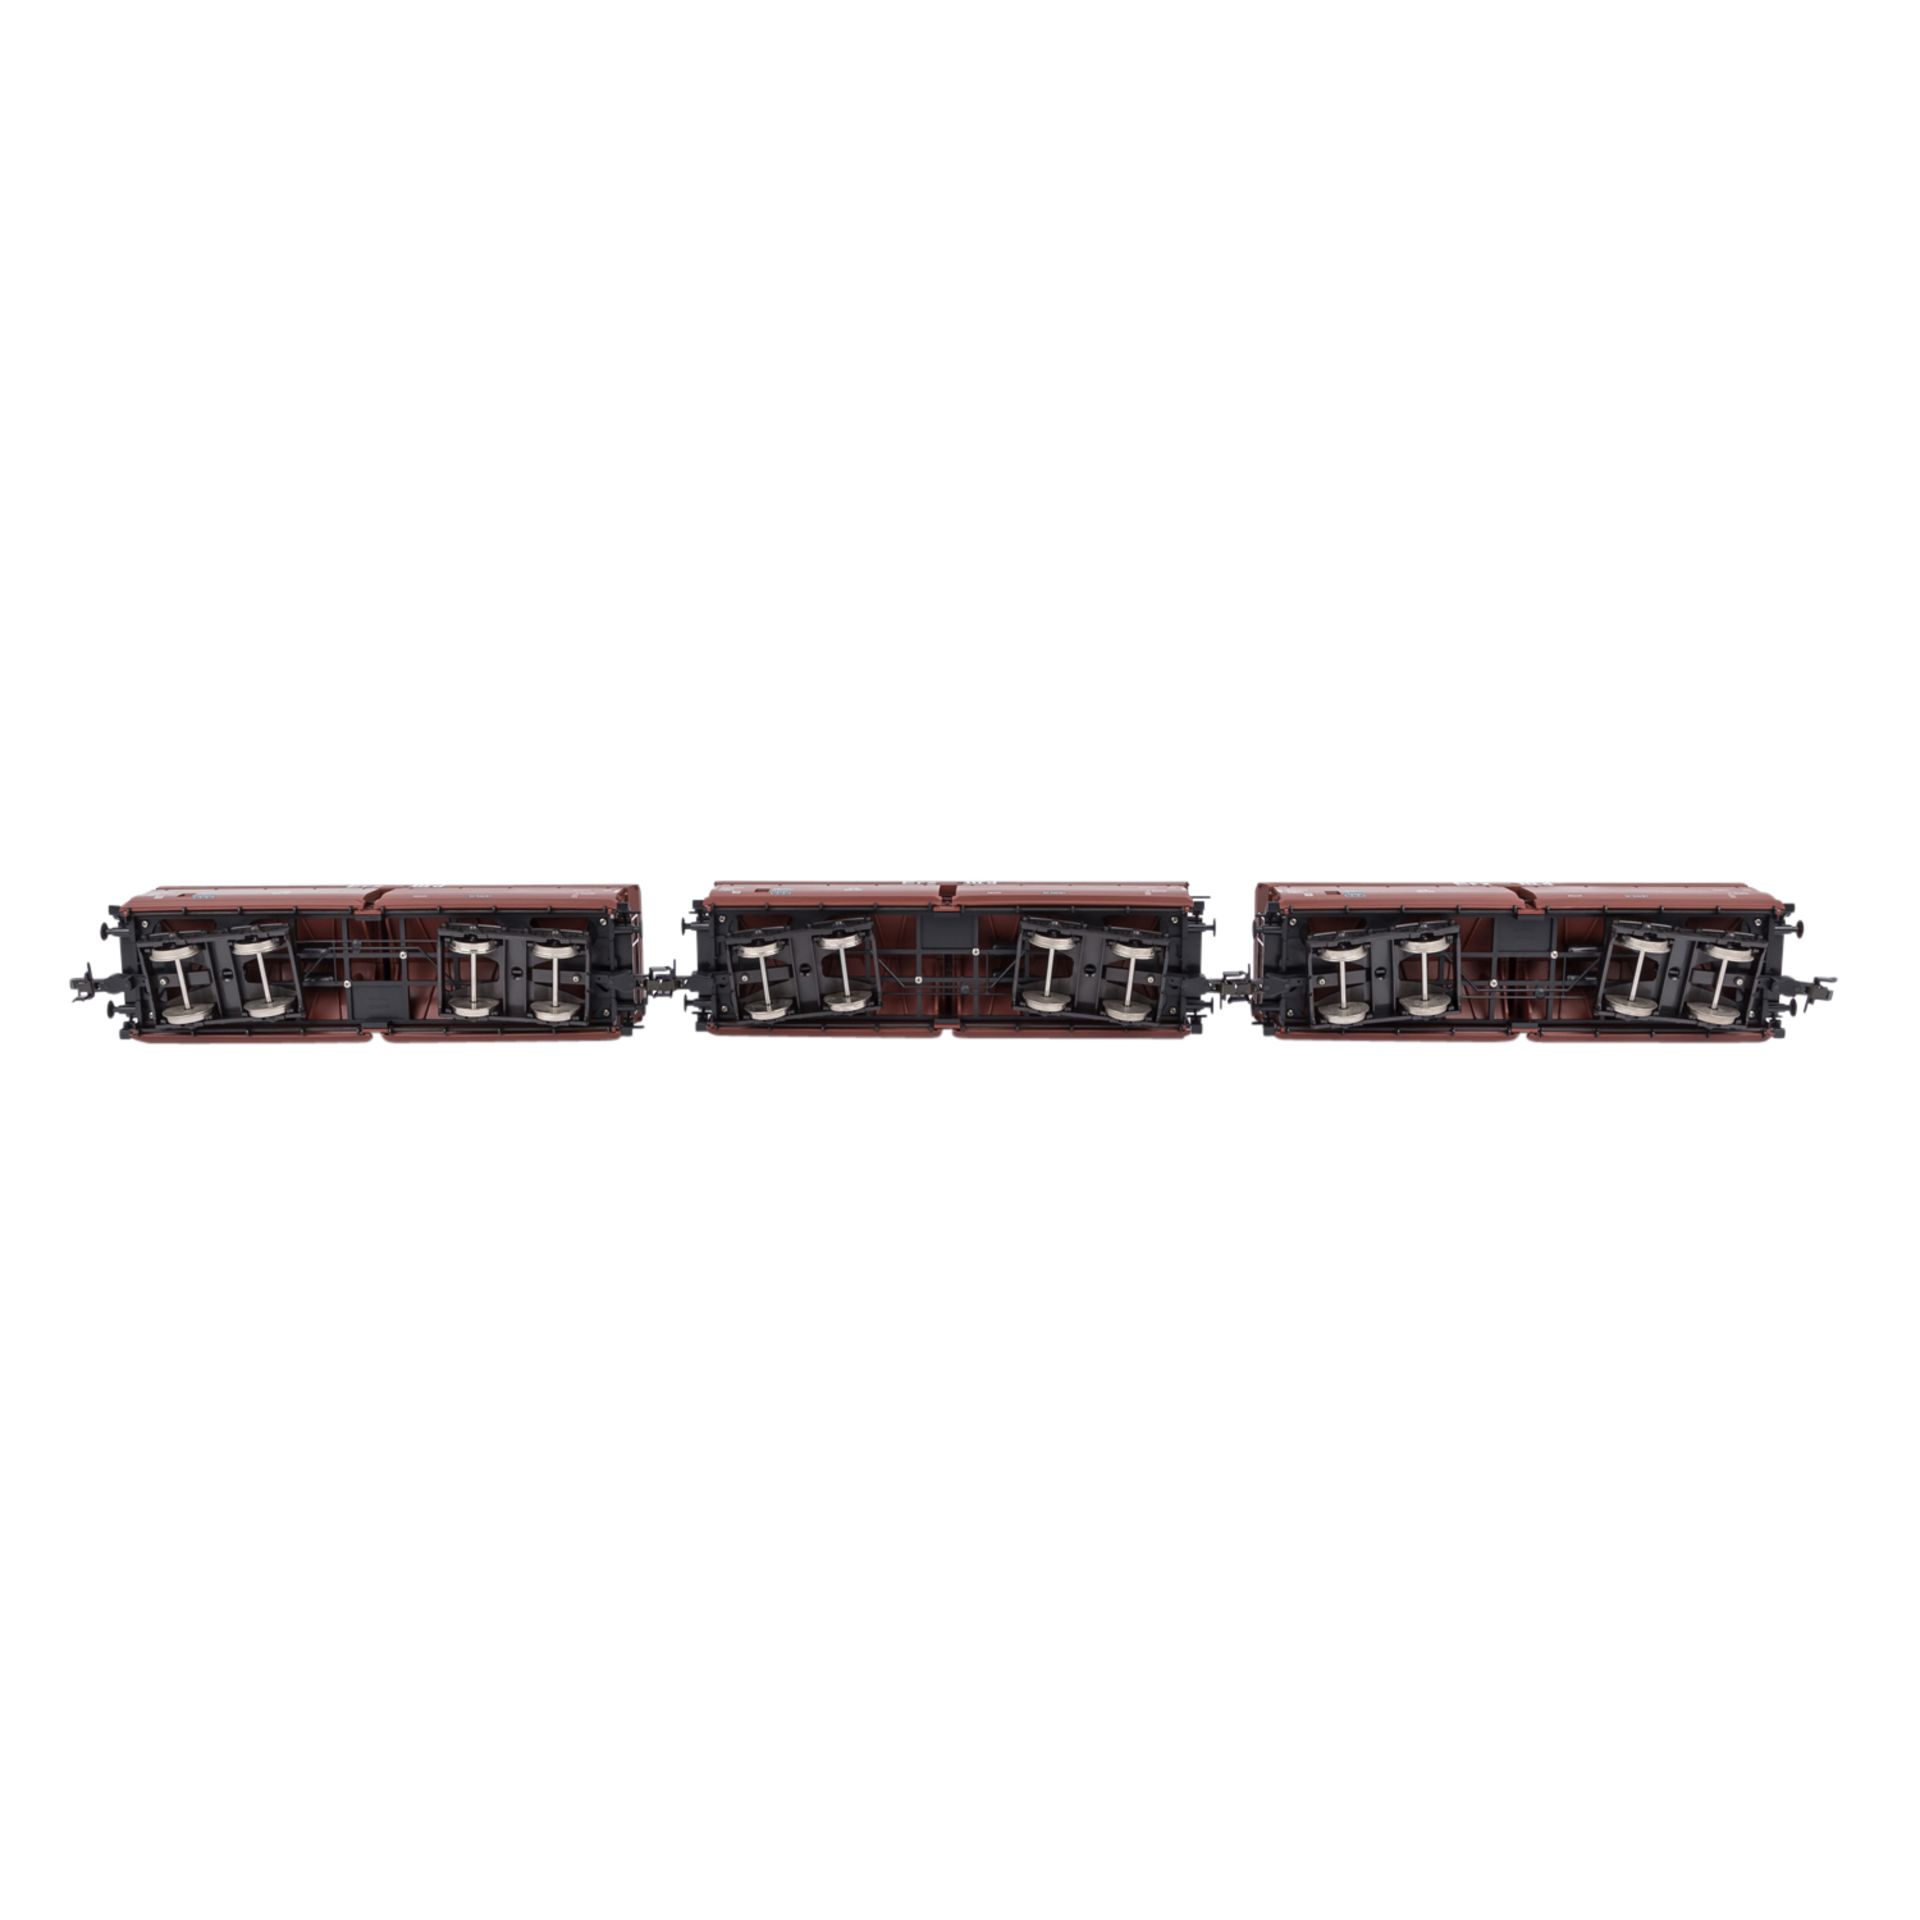 MÄRKLIN Wagen-Set "Erztransport" 58353, Spur 1.Bestehend aus 3 rötlich-braunen Selbstentladewagen - Bild 3 aus 4